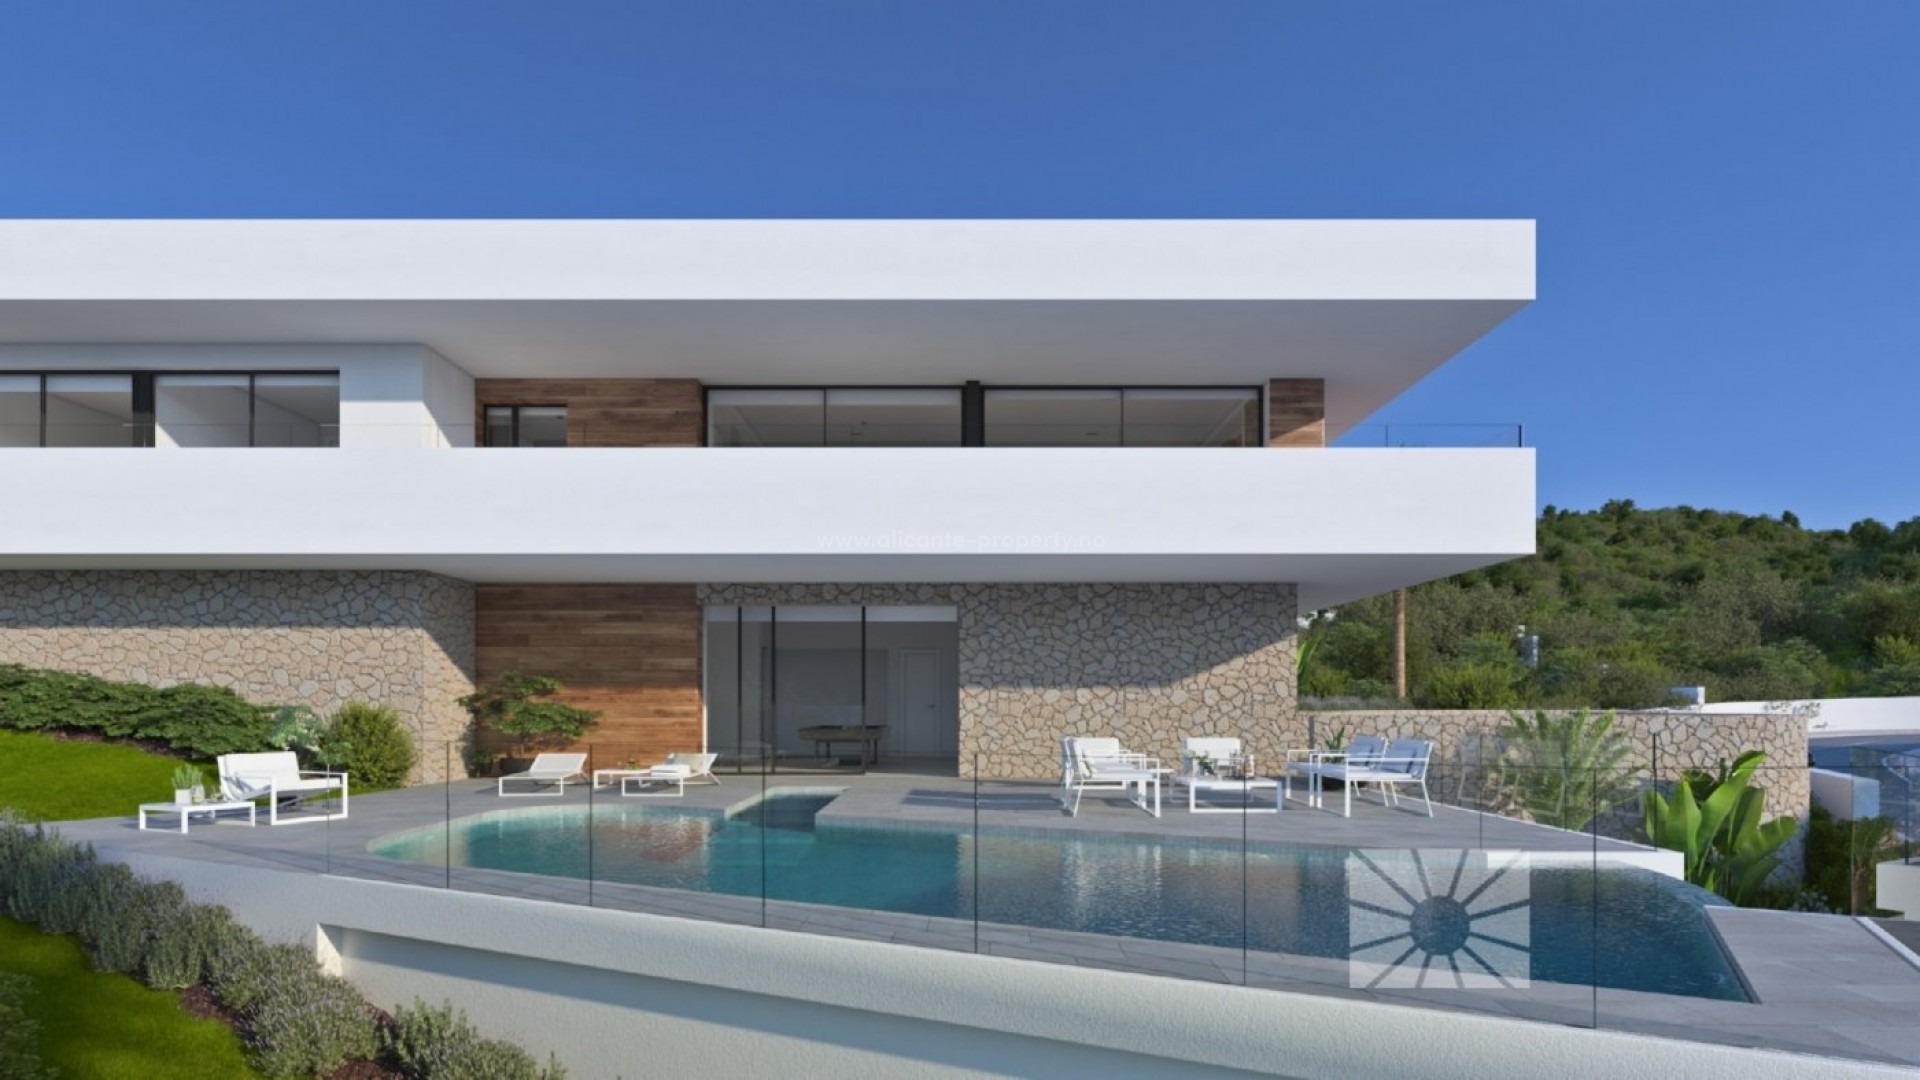 Luksus-villa til salgs i Cumbres del Sol, Benitachell, 3 soverom, 4 bad, terrasse med svømmebasseng og havutsikt, hageområde og dobbel garasje